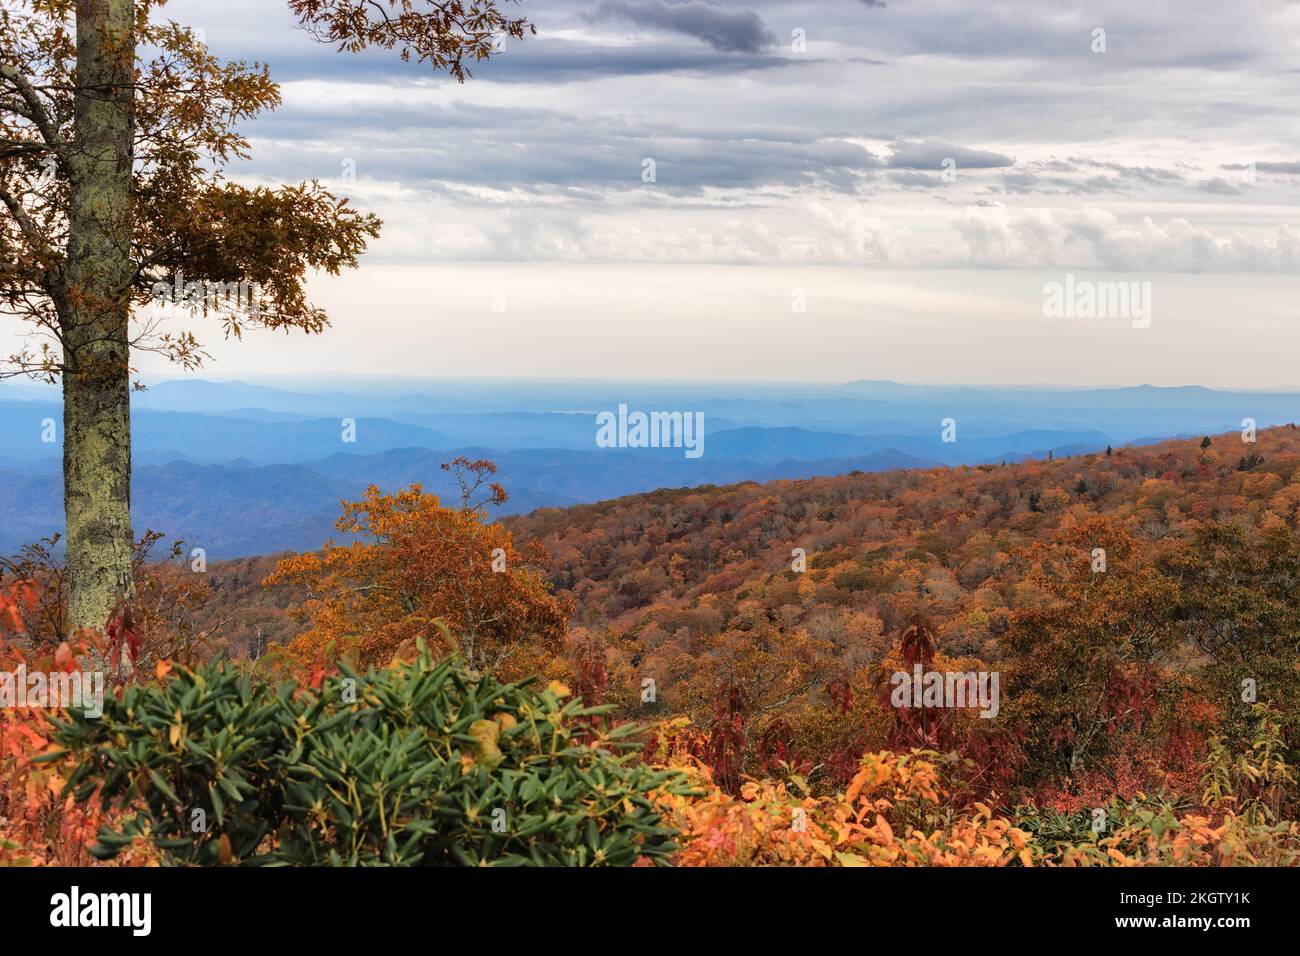 Der Green Mountain Overlook am Blue Ridge Parkway von North Carolina liegt auf einer Höhe von 4134 Metern. Stockfoto